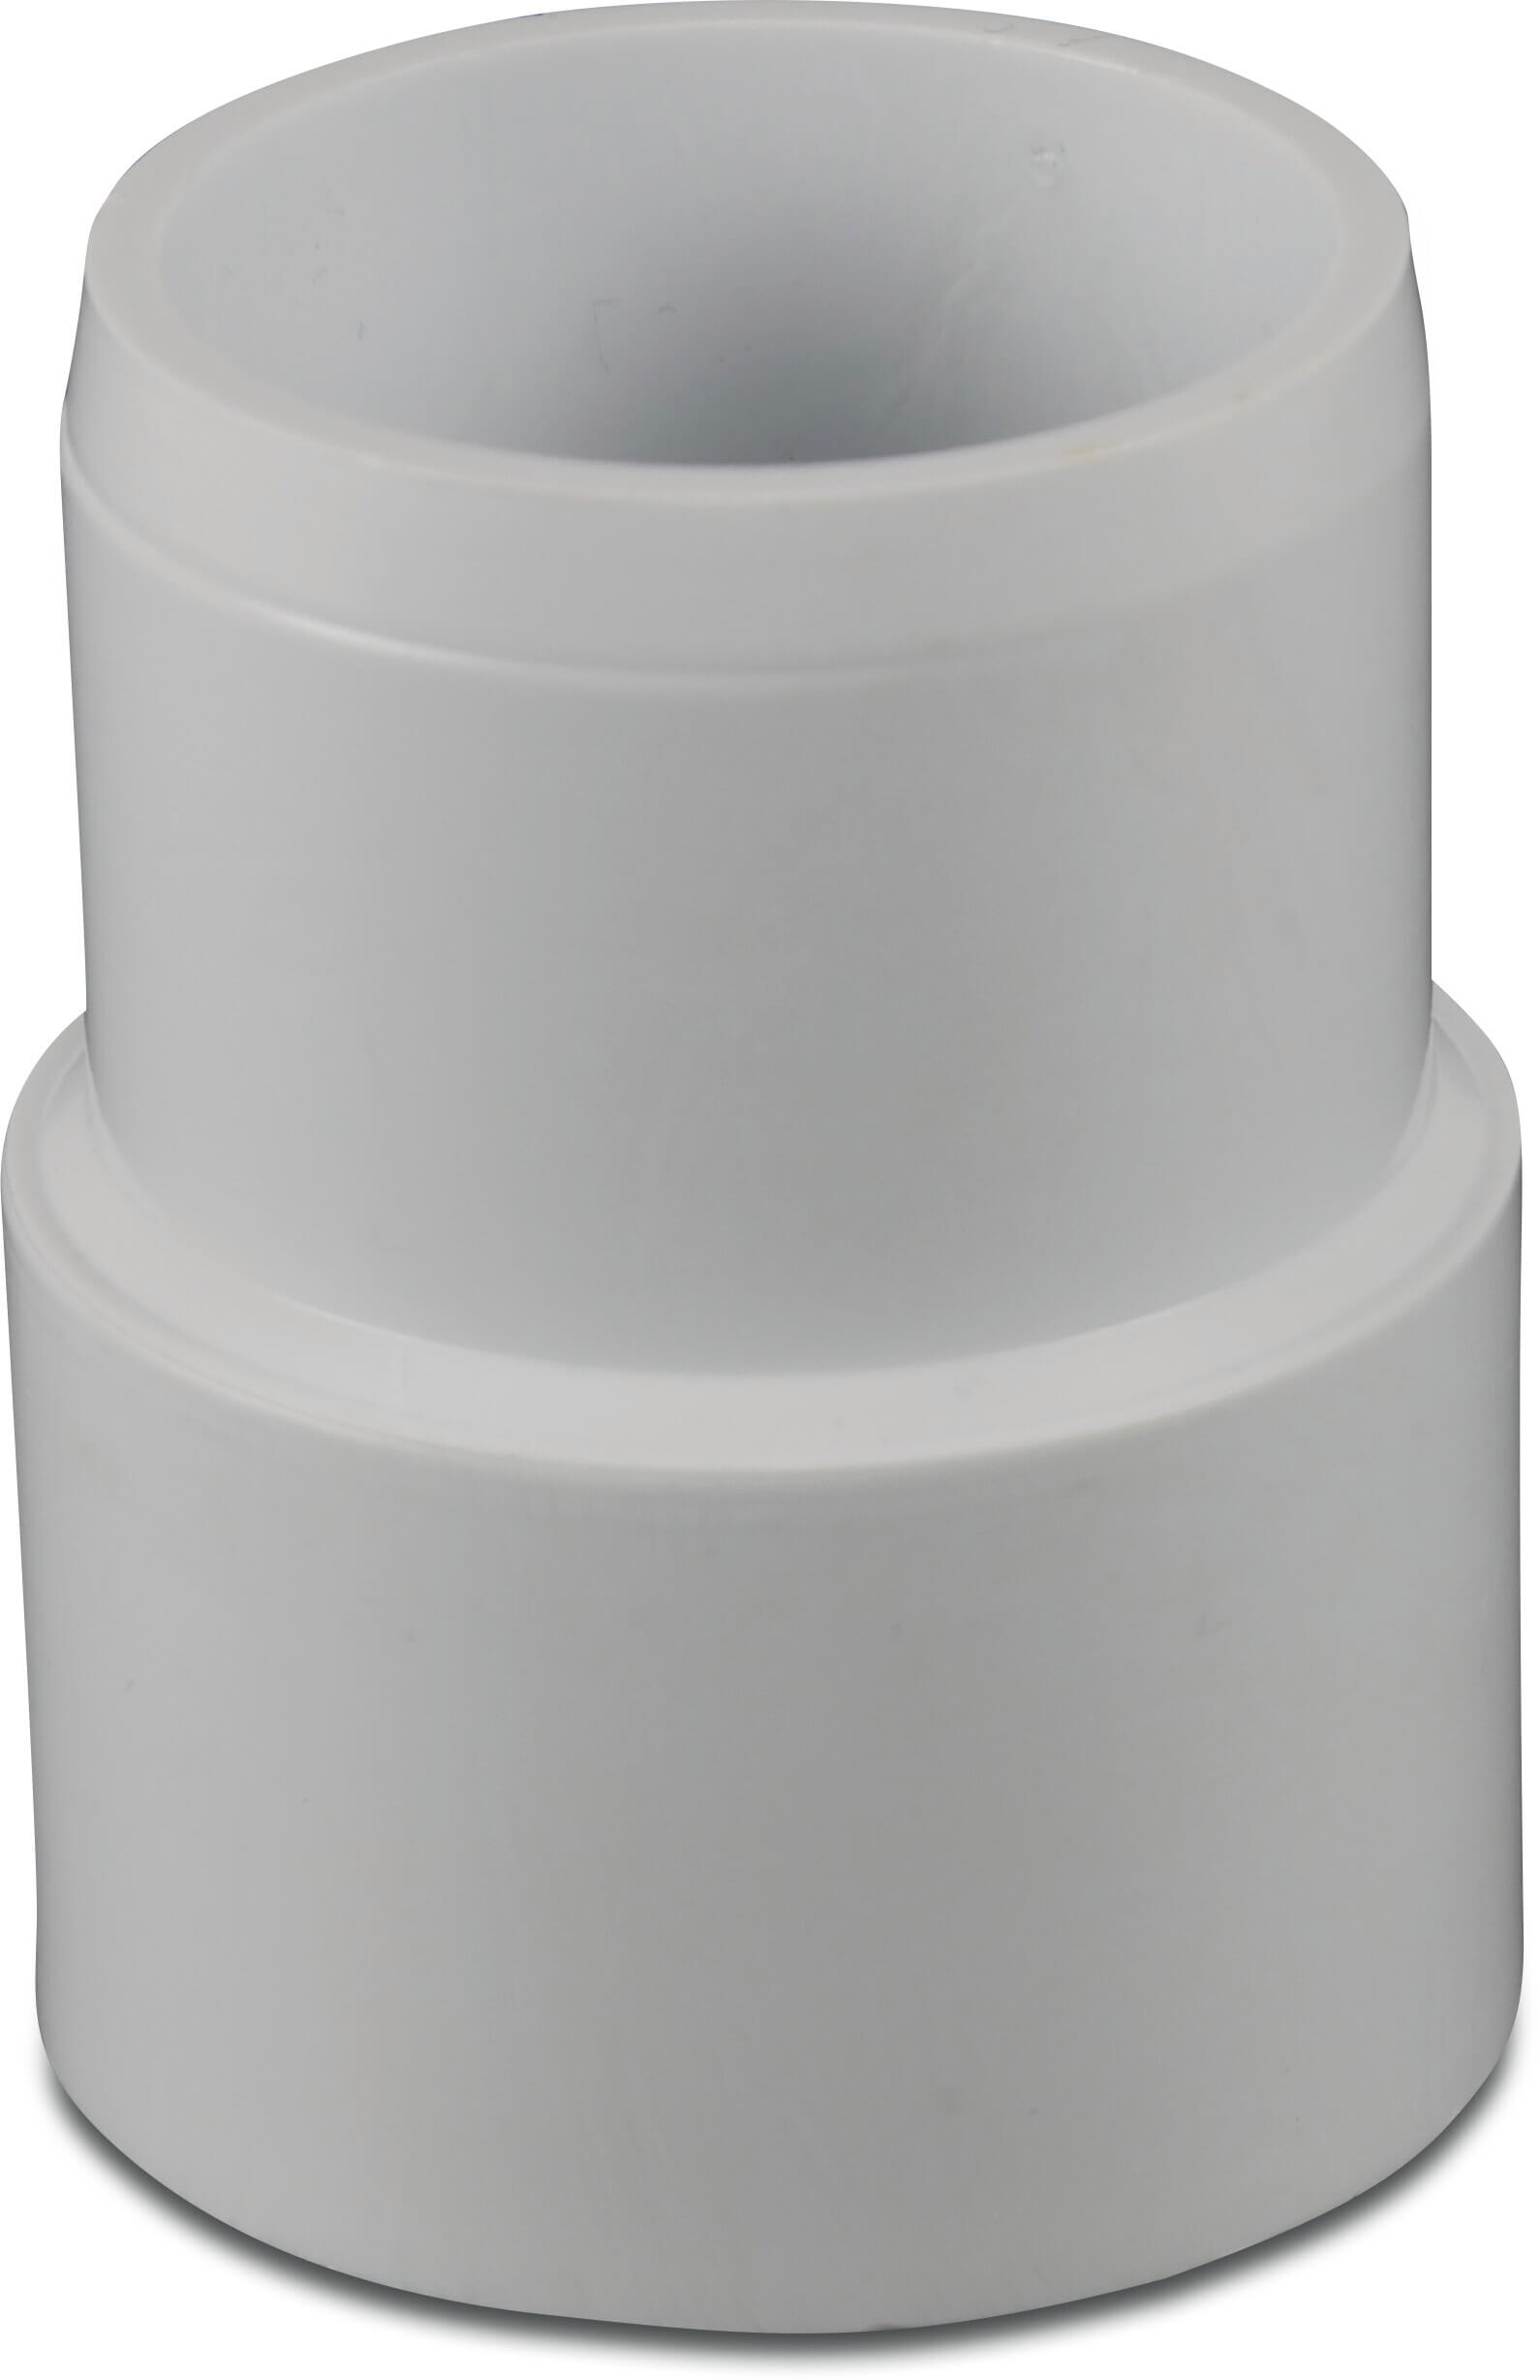 Profec Repair Coupler PVC-U 1 1/2" imperial glue socket x imperial glue spigot white type PipeMate